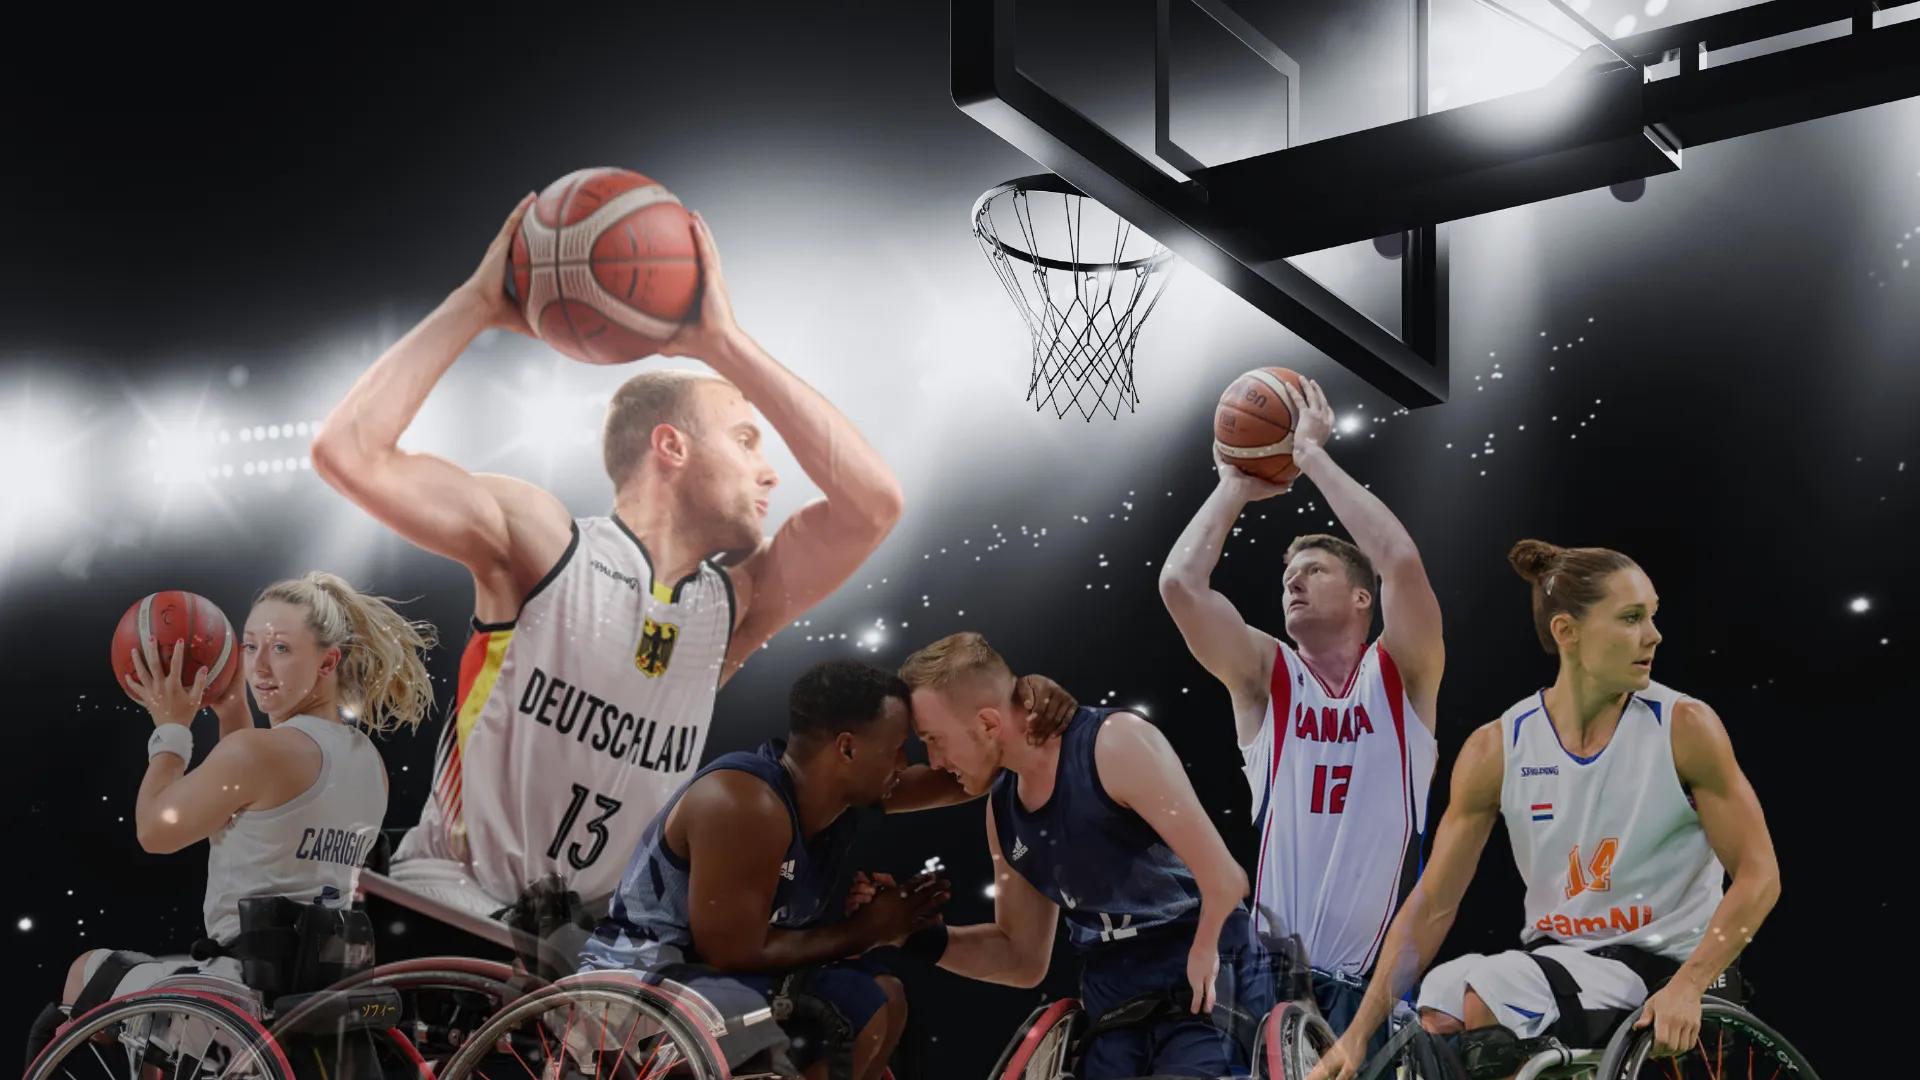 RGK sponsors Wheelchair Basketball World Championships in Dubai